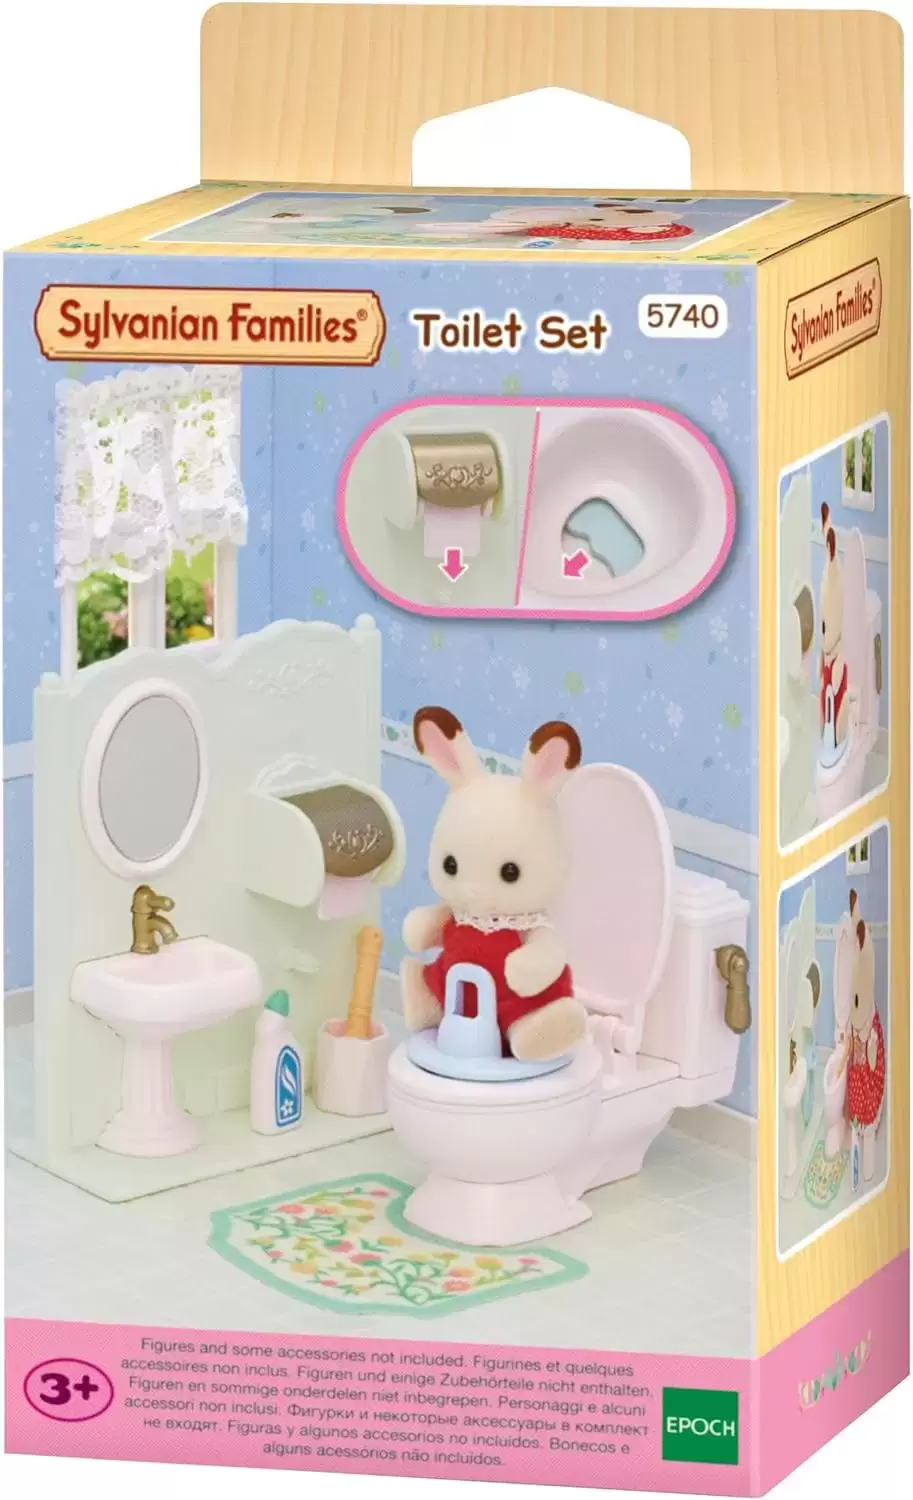 Sylvanian Families (Europe) - Toilet Set